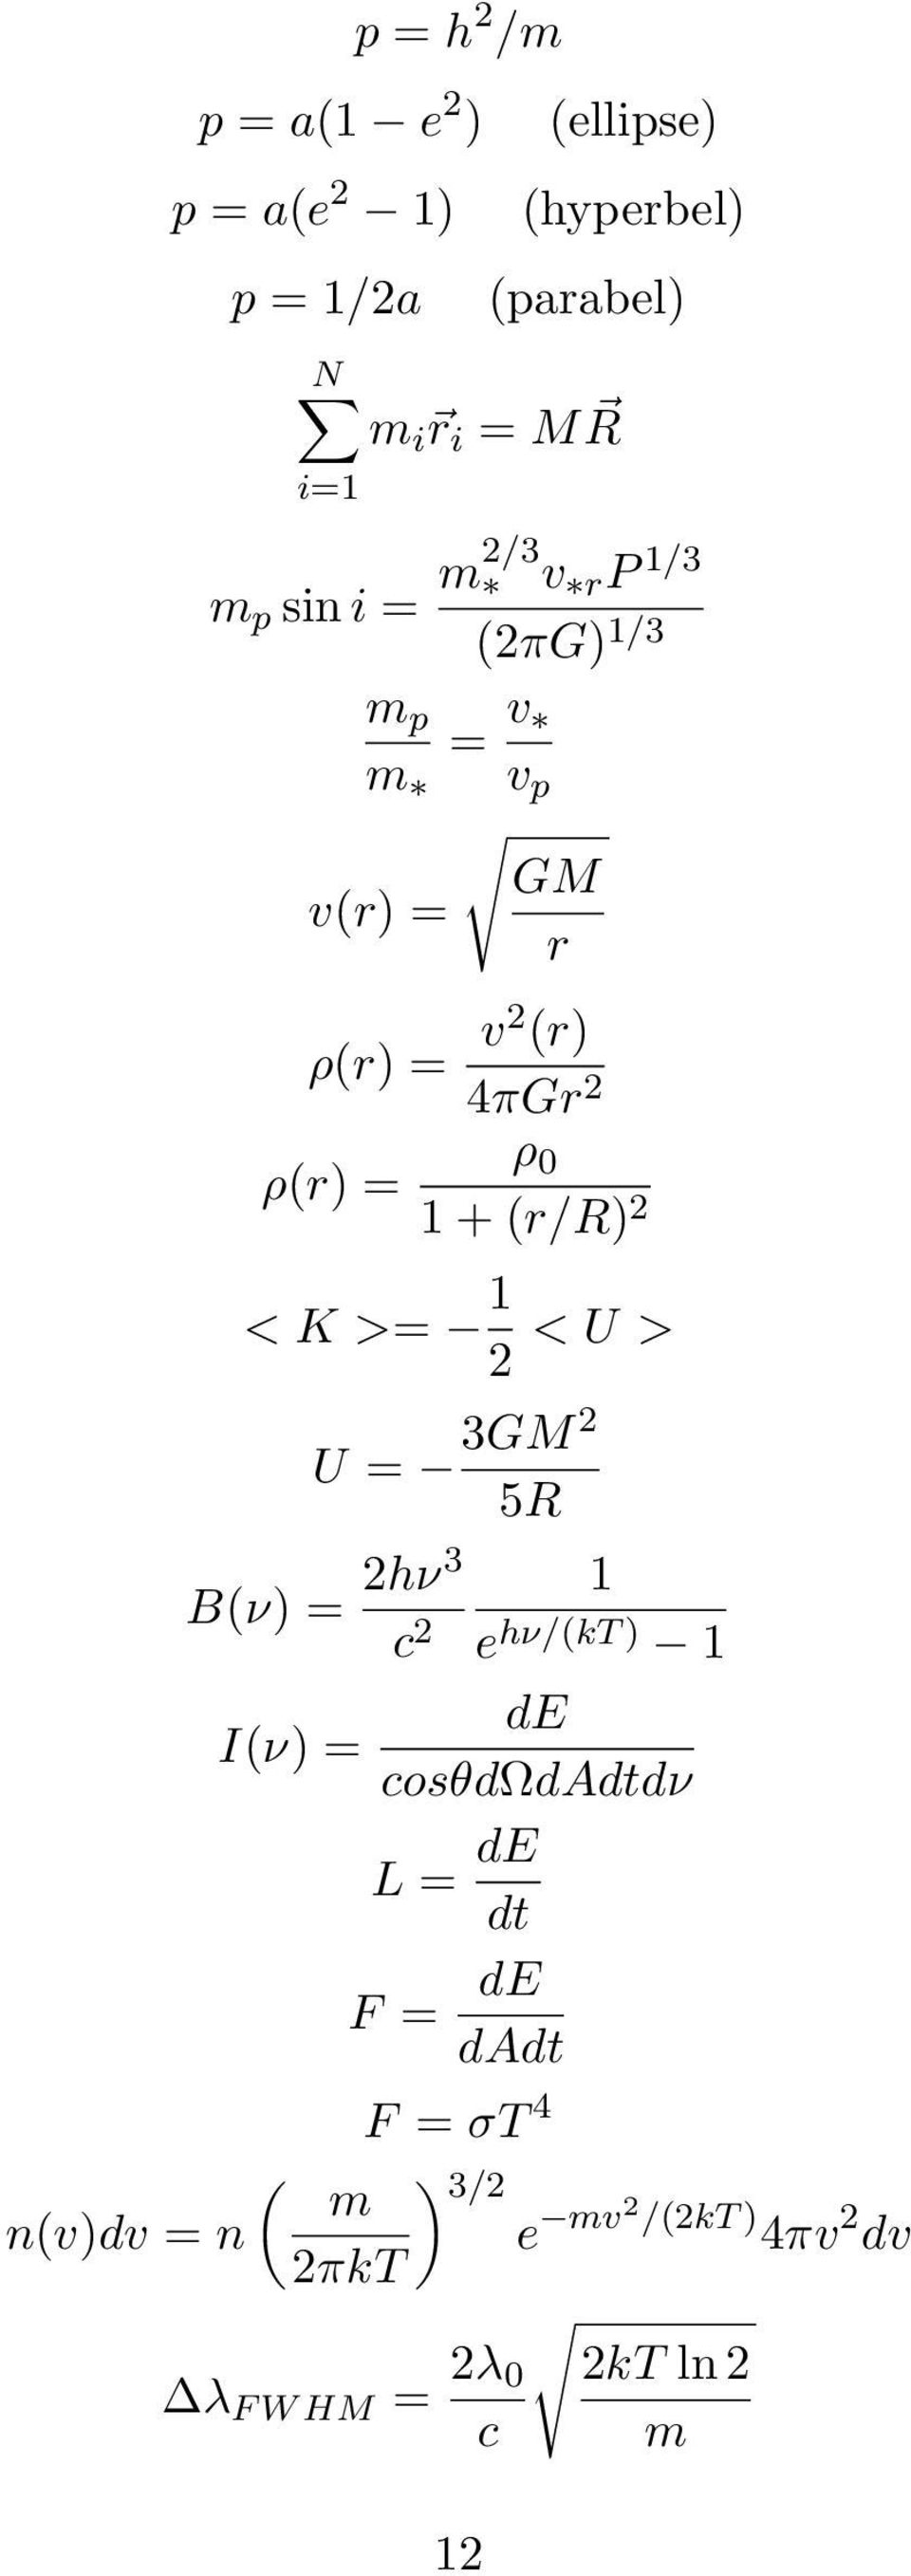 (r/r) 2 < K >= 1 2 < U > U = 3GM 2 5R B(ν) = 2hν3 1 c 2 e hν/(kt ) 1 de I(ν) = cosθdωdadtdν L = de